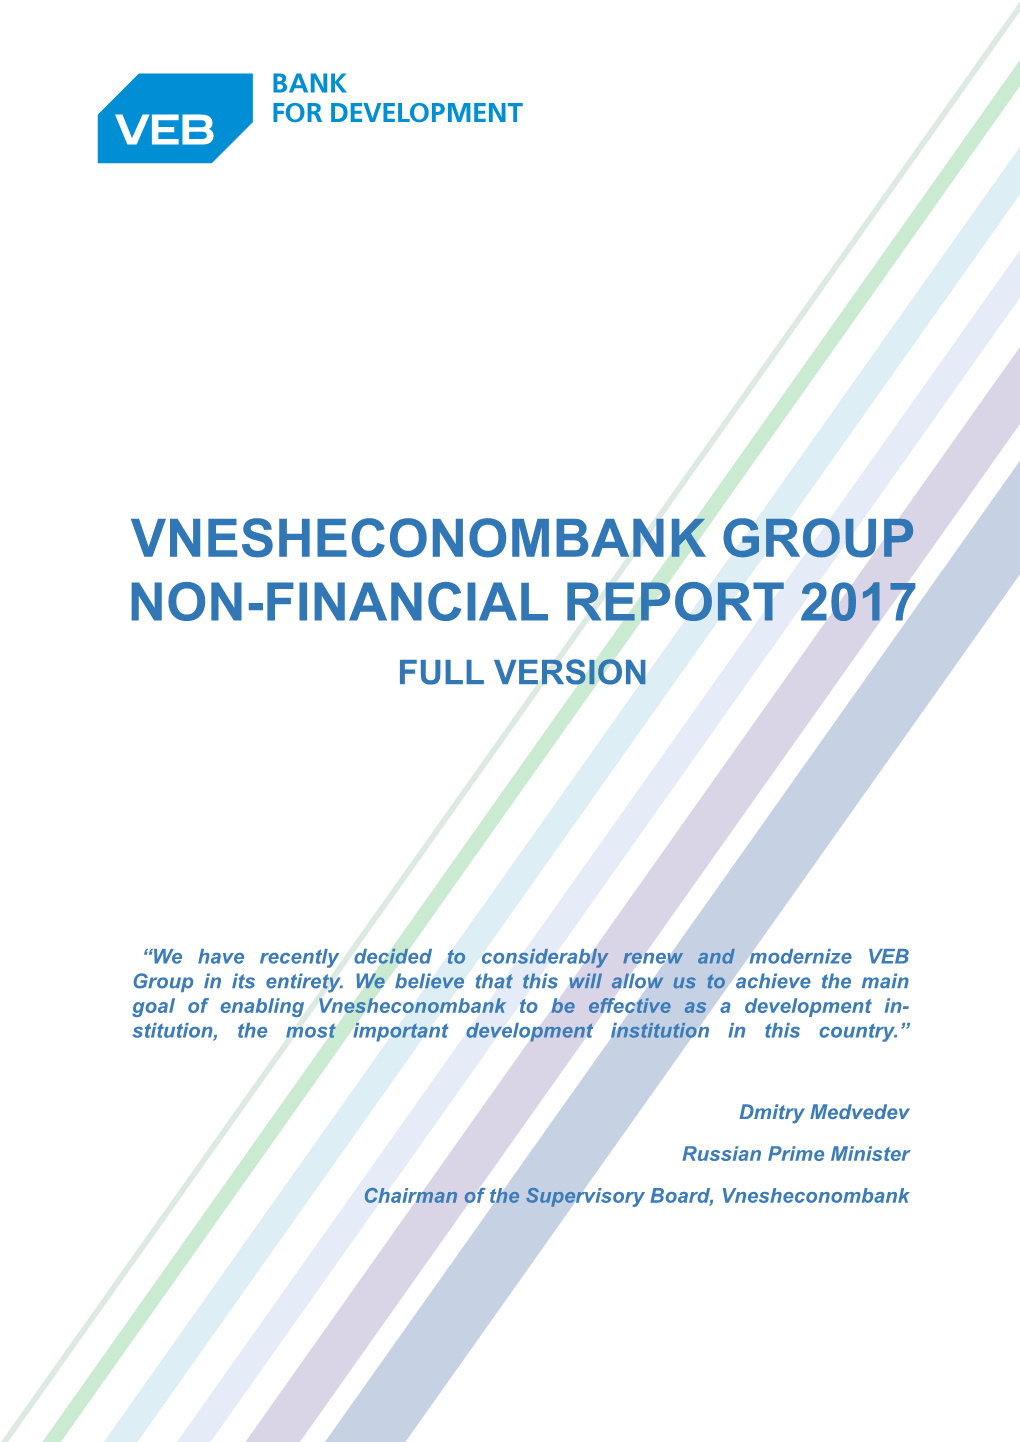 Vnesheconombank Group Non-Financial Report 2017 Full Version